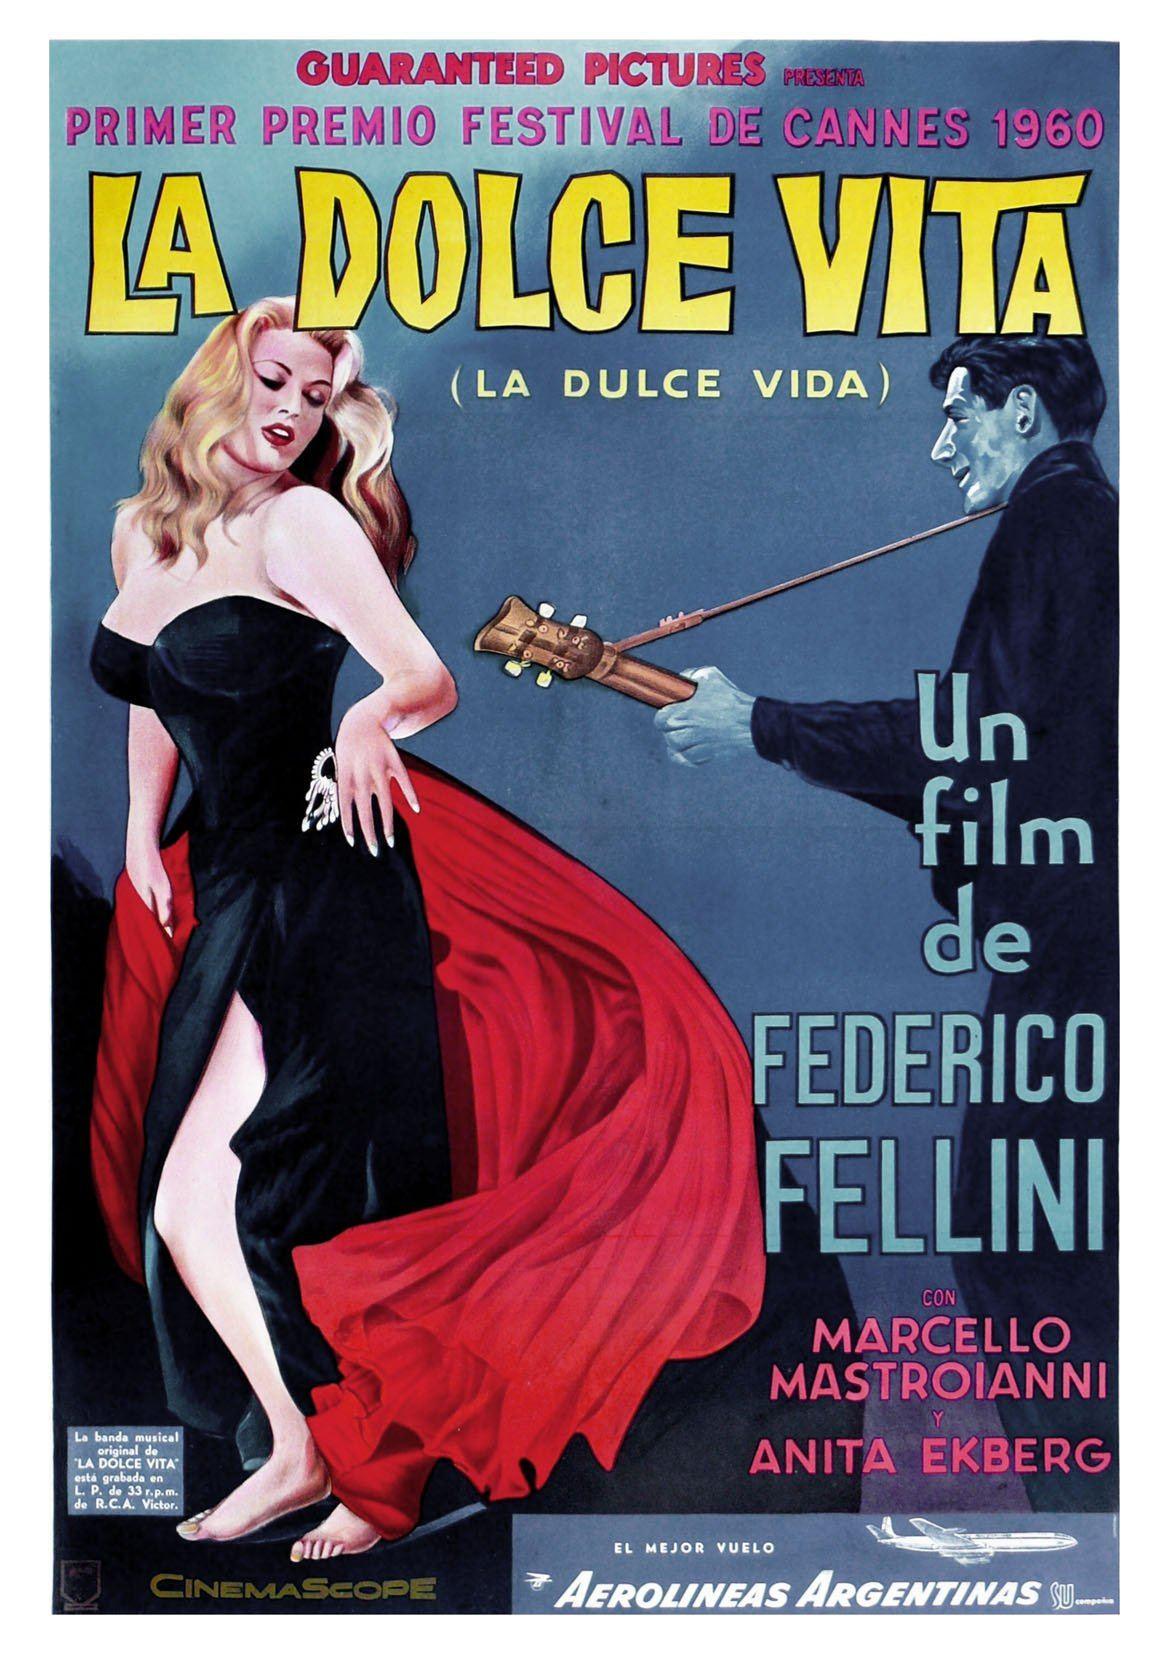 LA DOLCE VITA: Classic Italian Movie Poster Art Reprint - Pimlico Prints